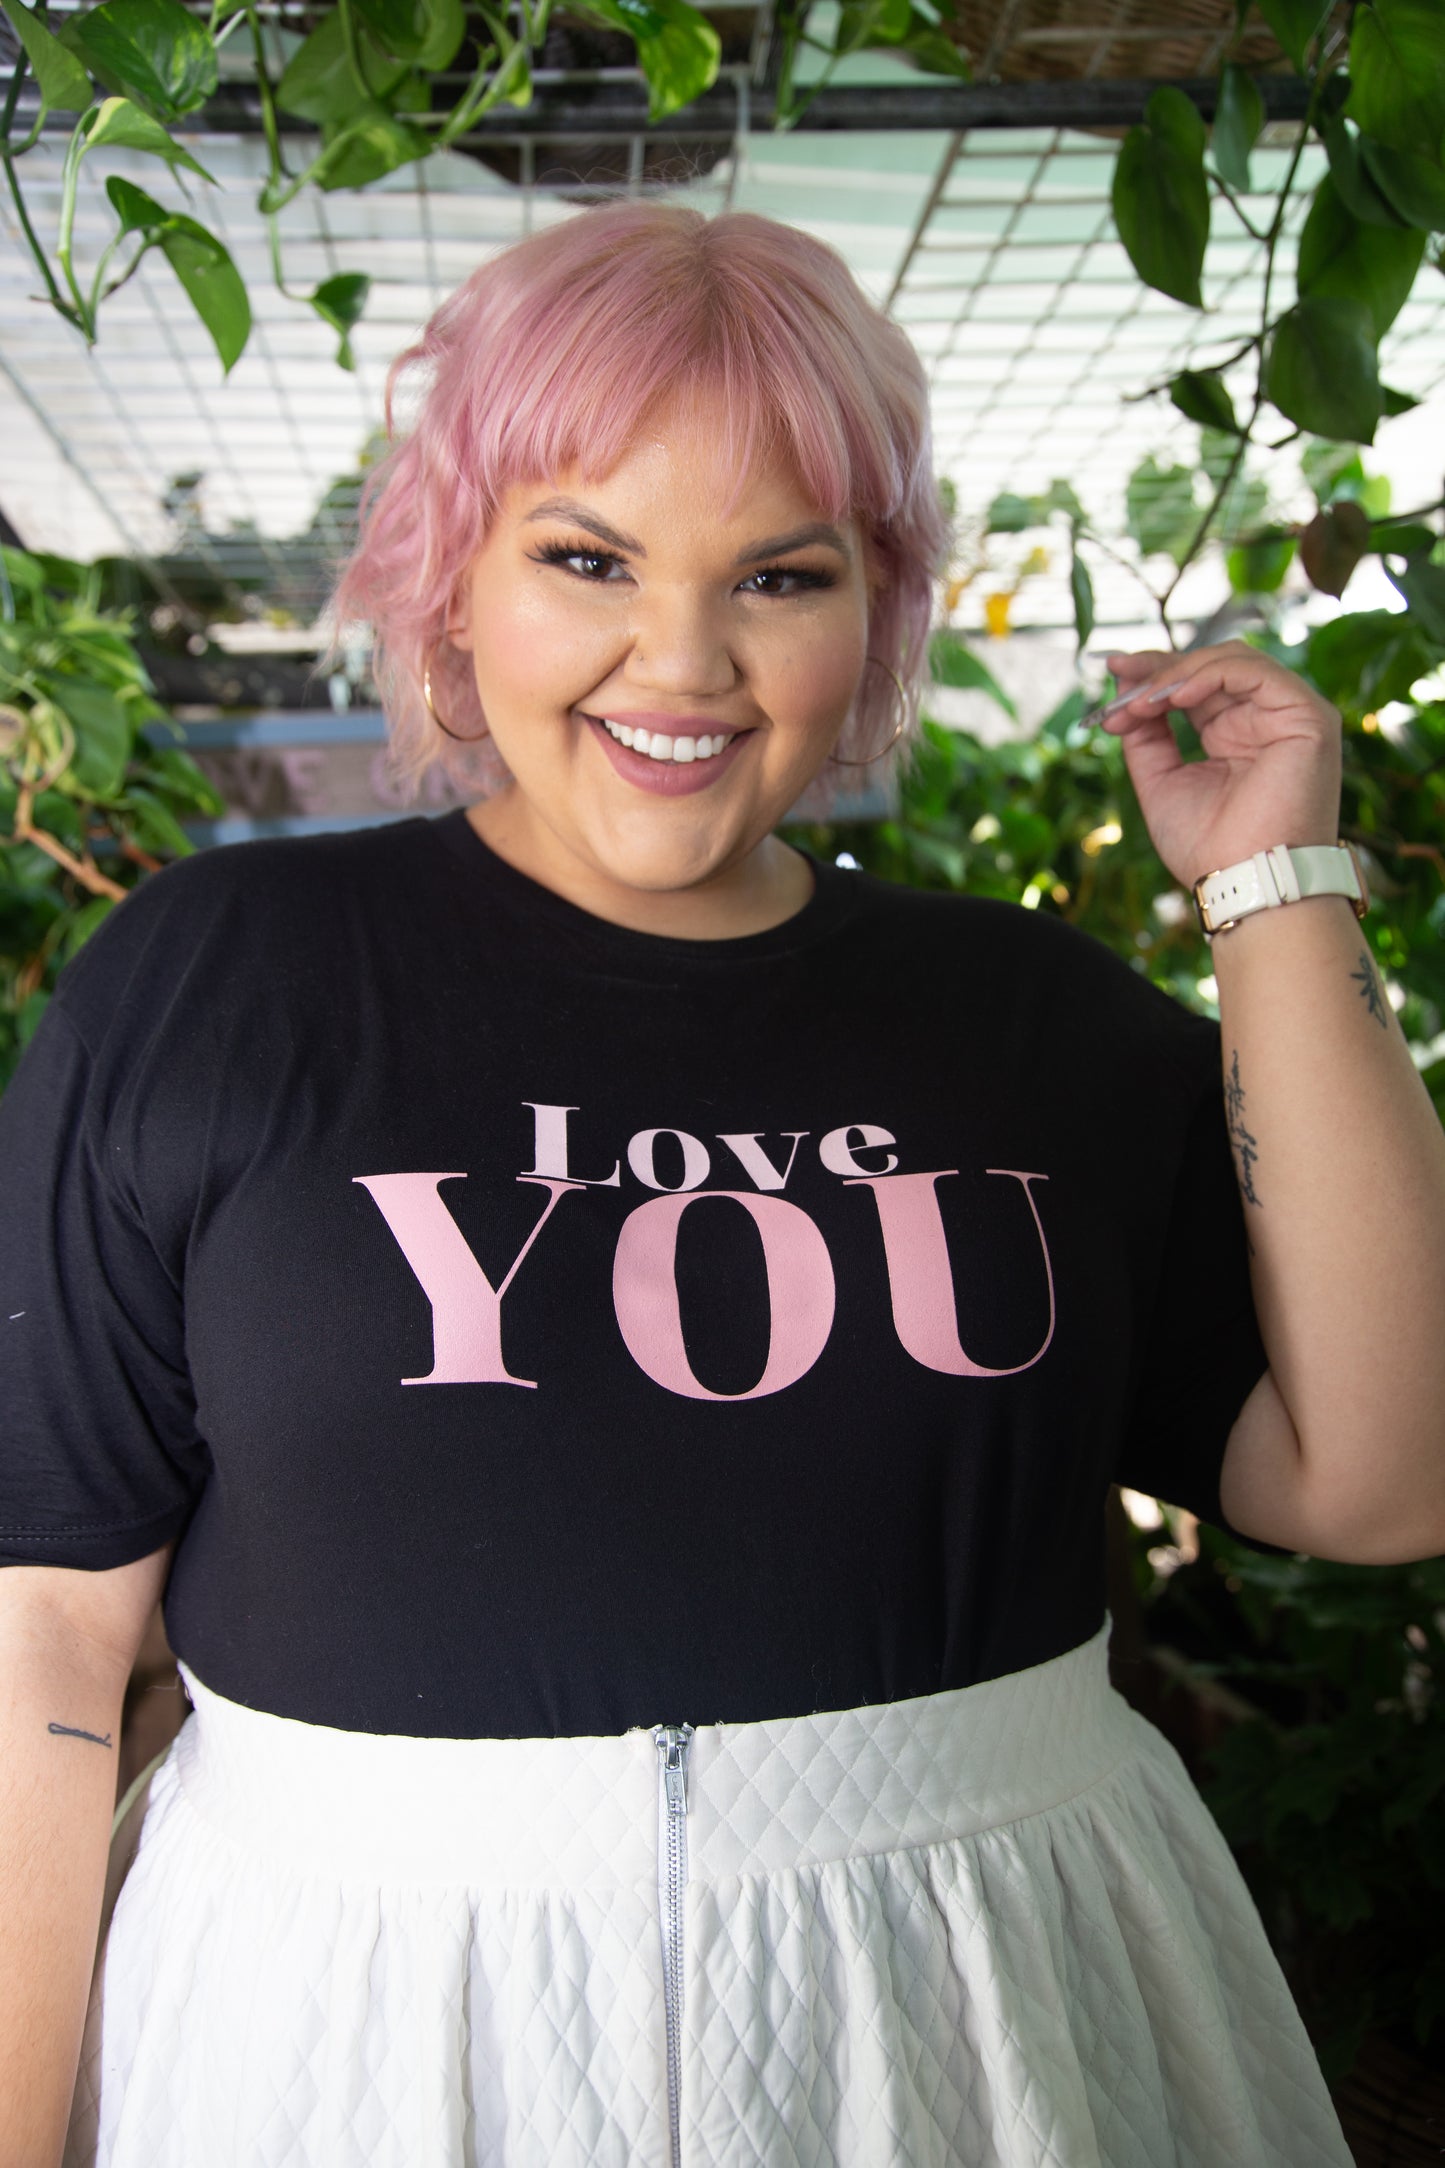 Love "YOU" Black T-Shirt